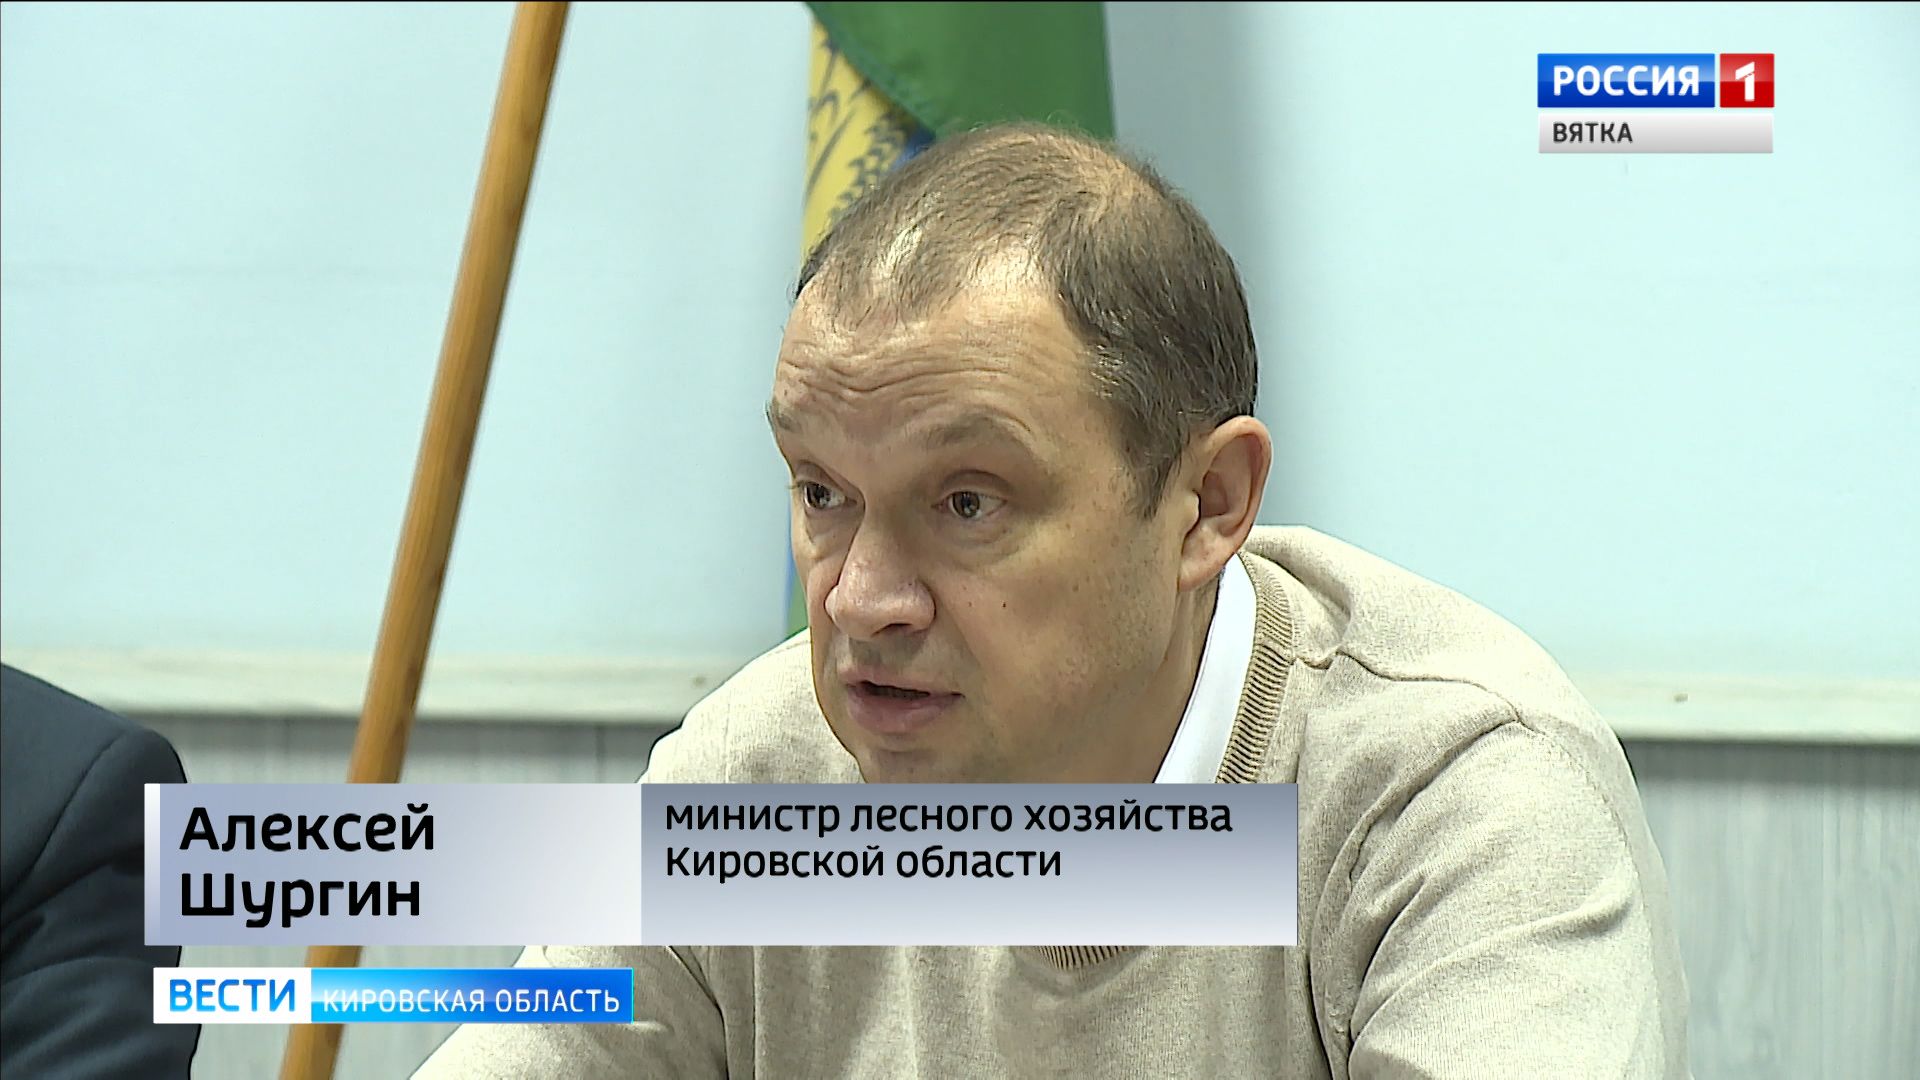 Сайт министерства лесного кировской области. Шургин министр лесного хозяйства Кировской области.